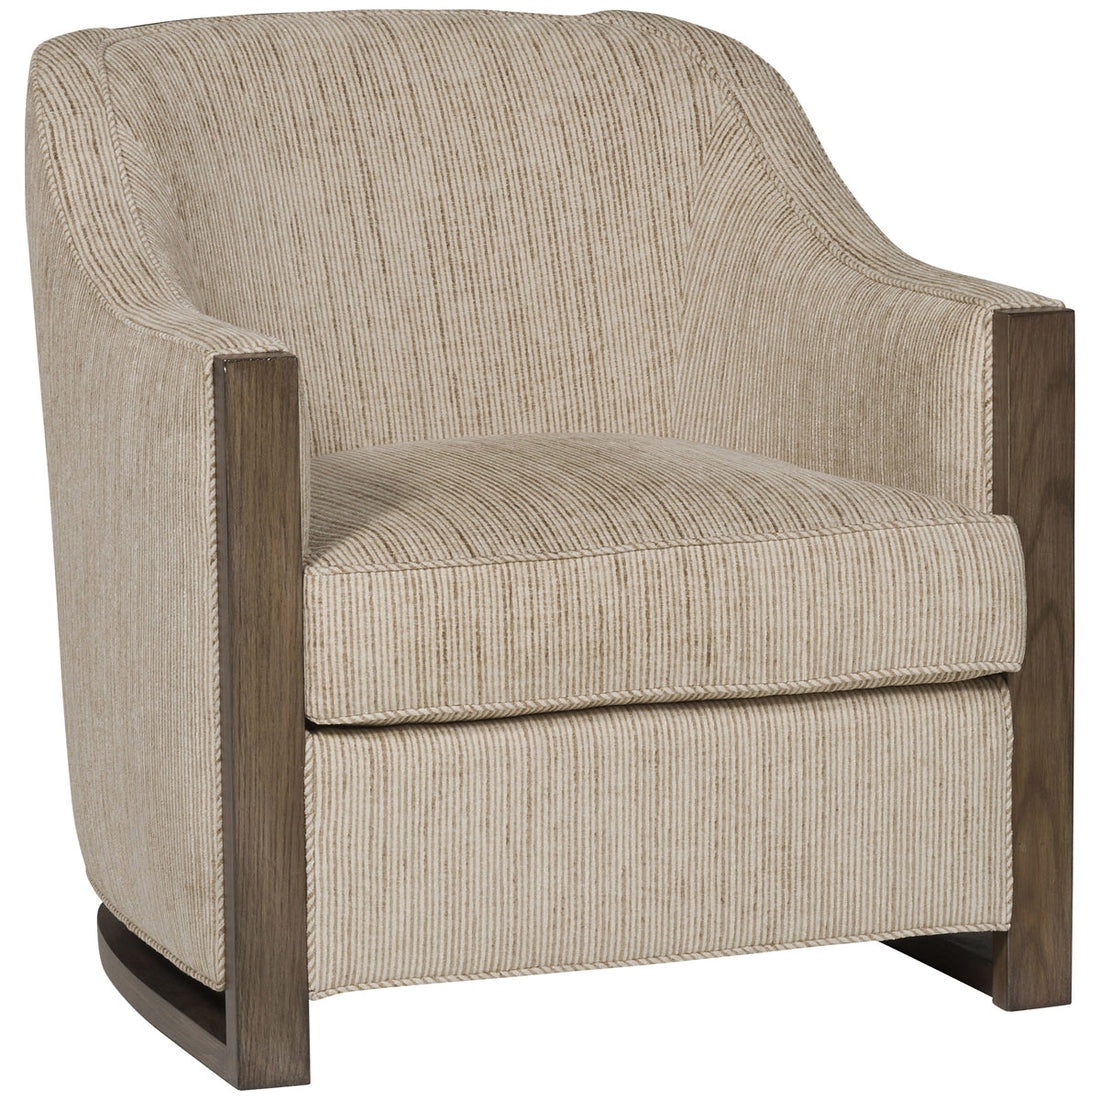 Vanguard Furniture Huxley Chair